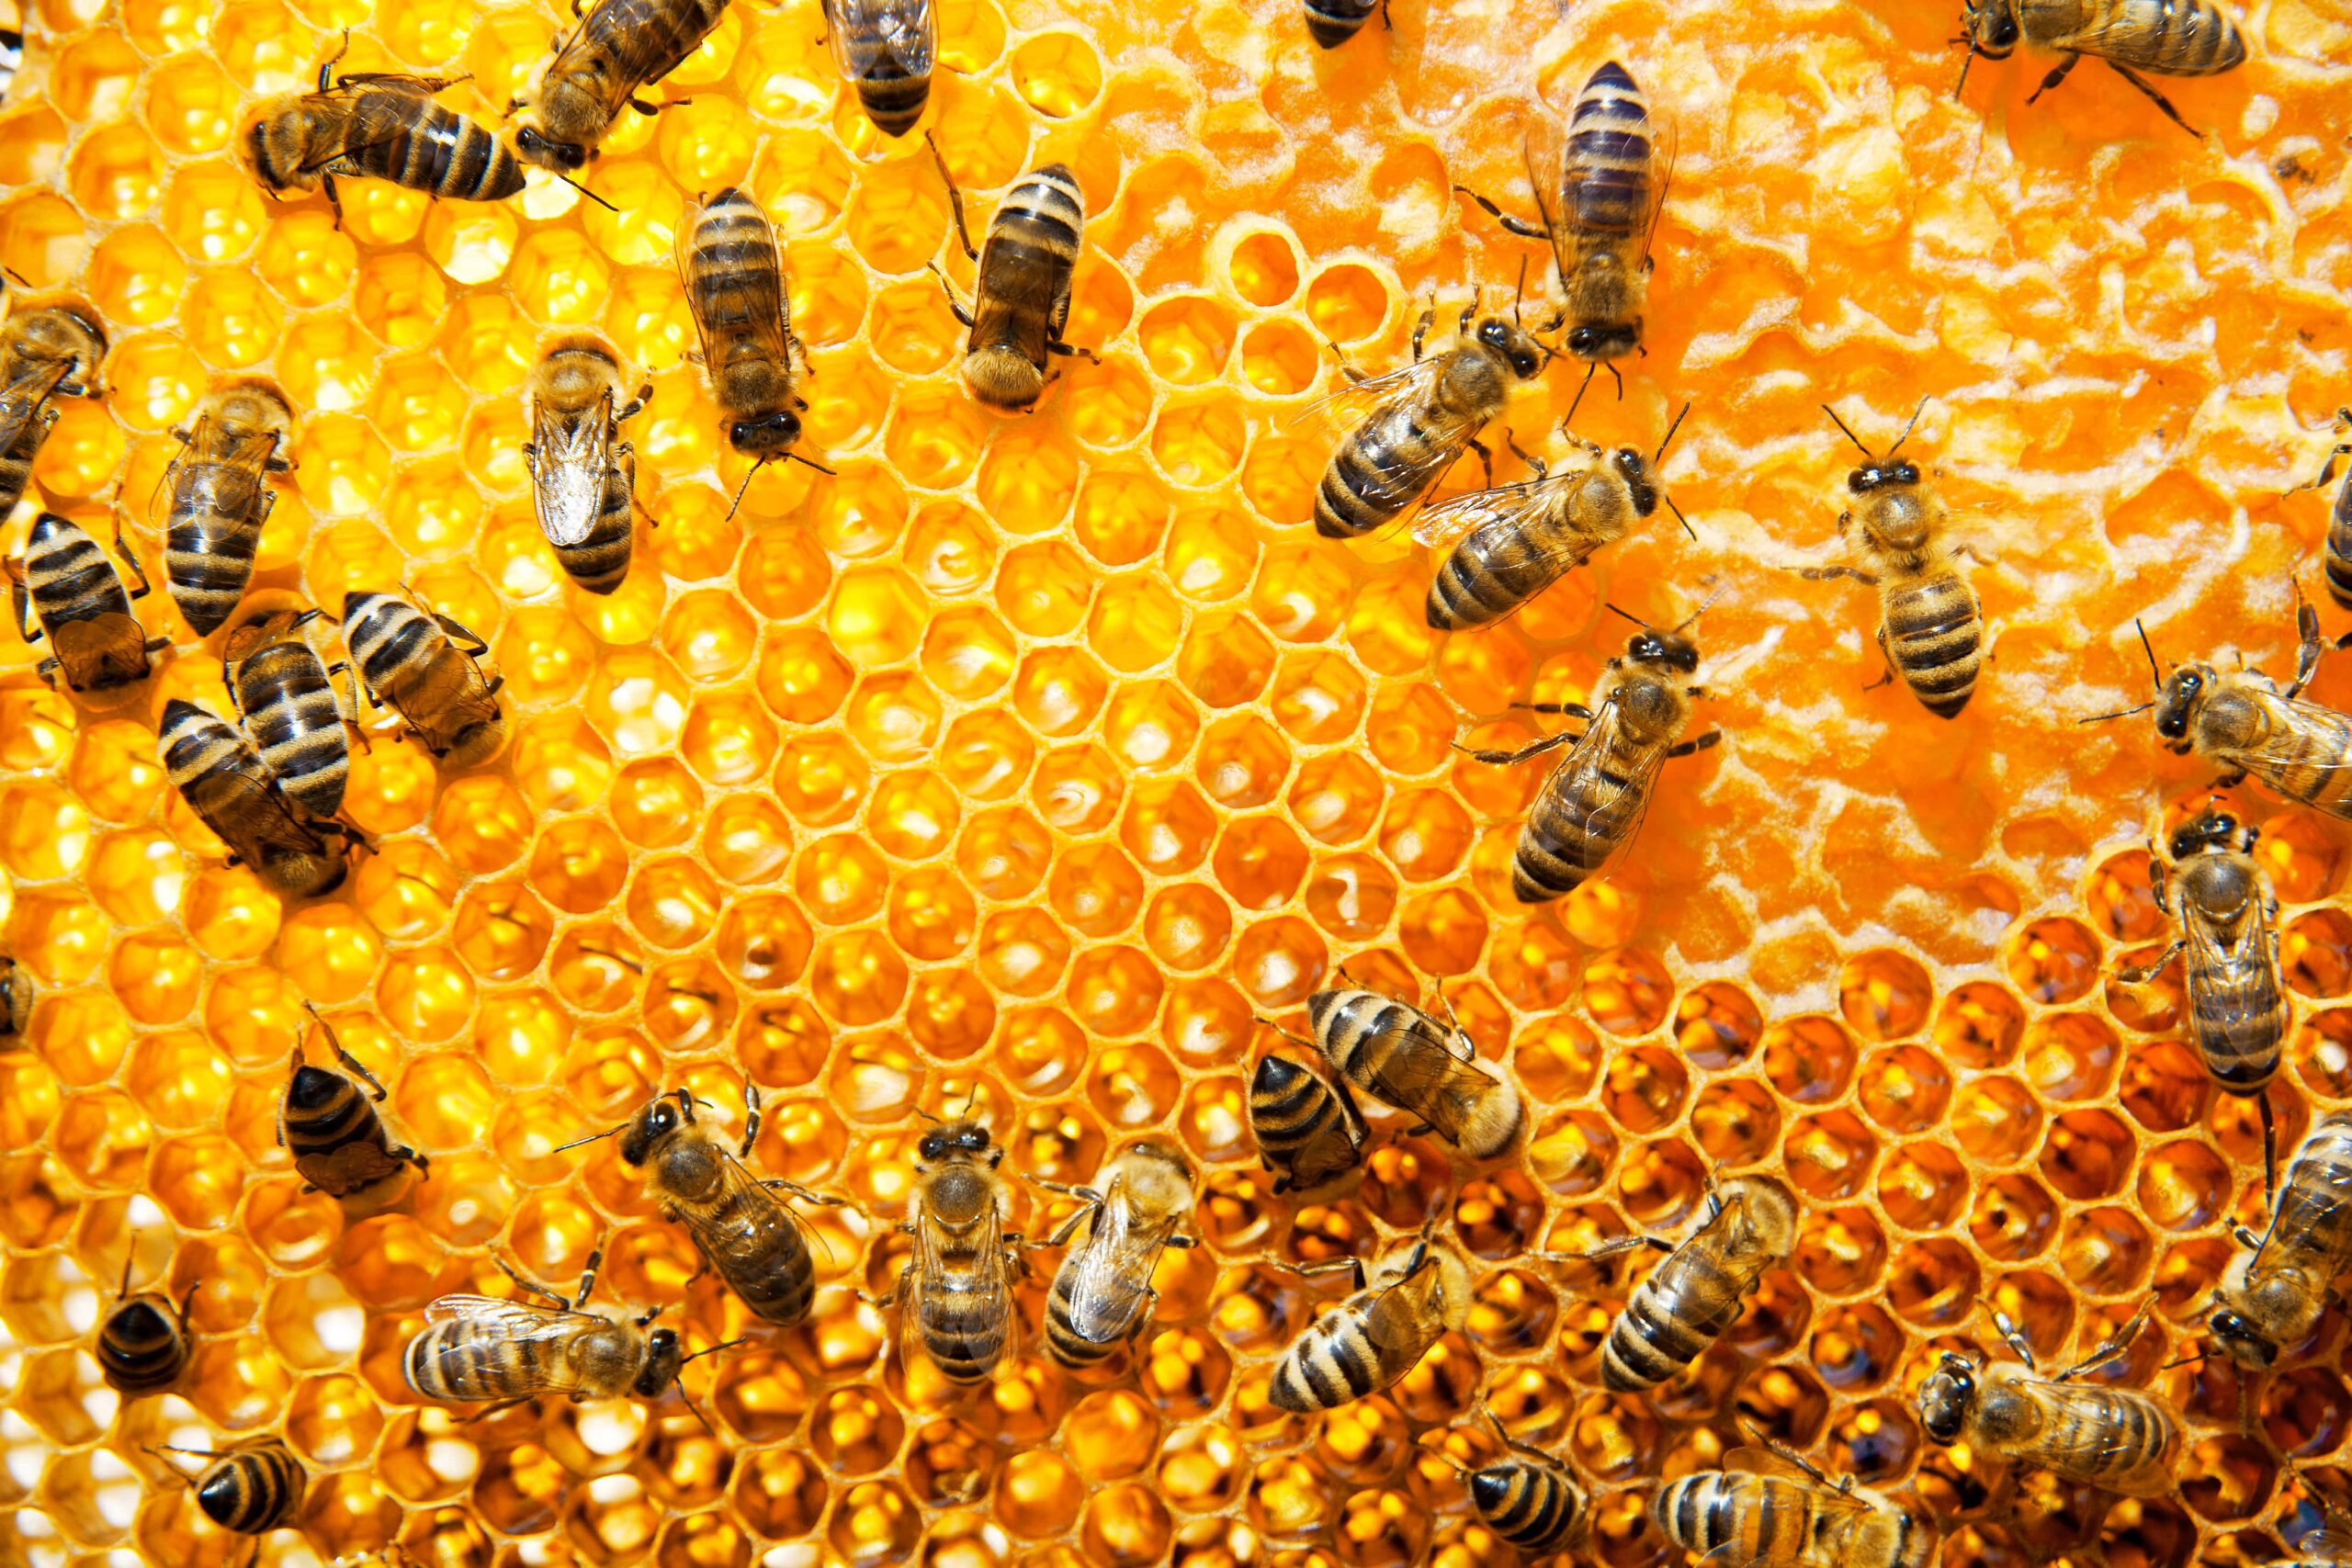 Bee control service in dubai